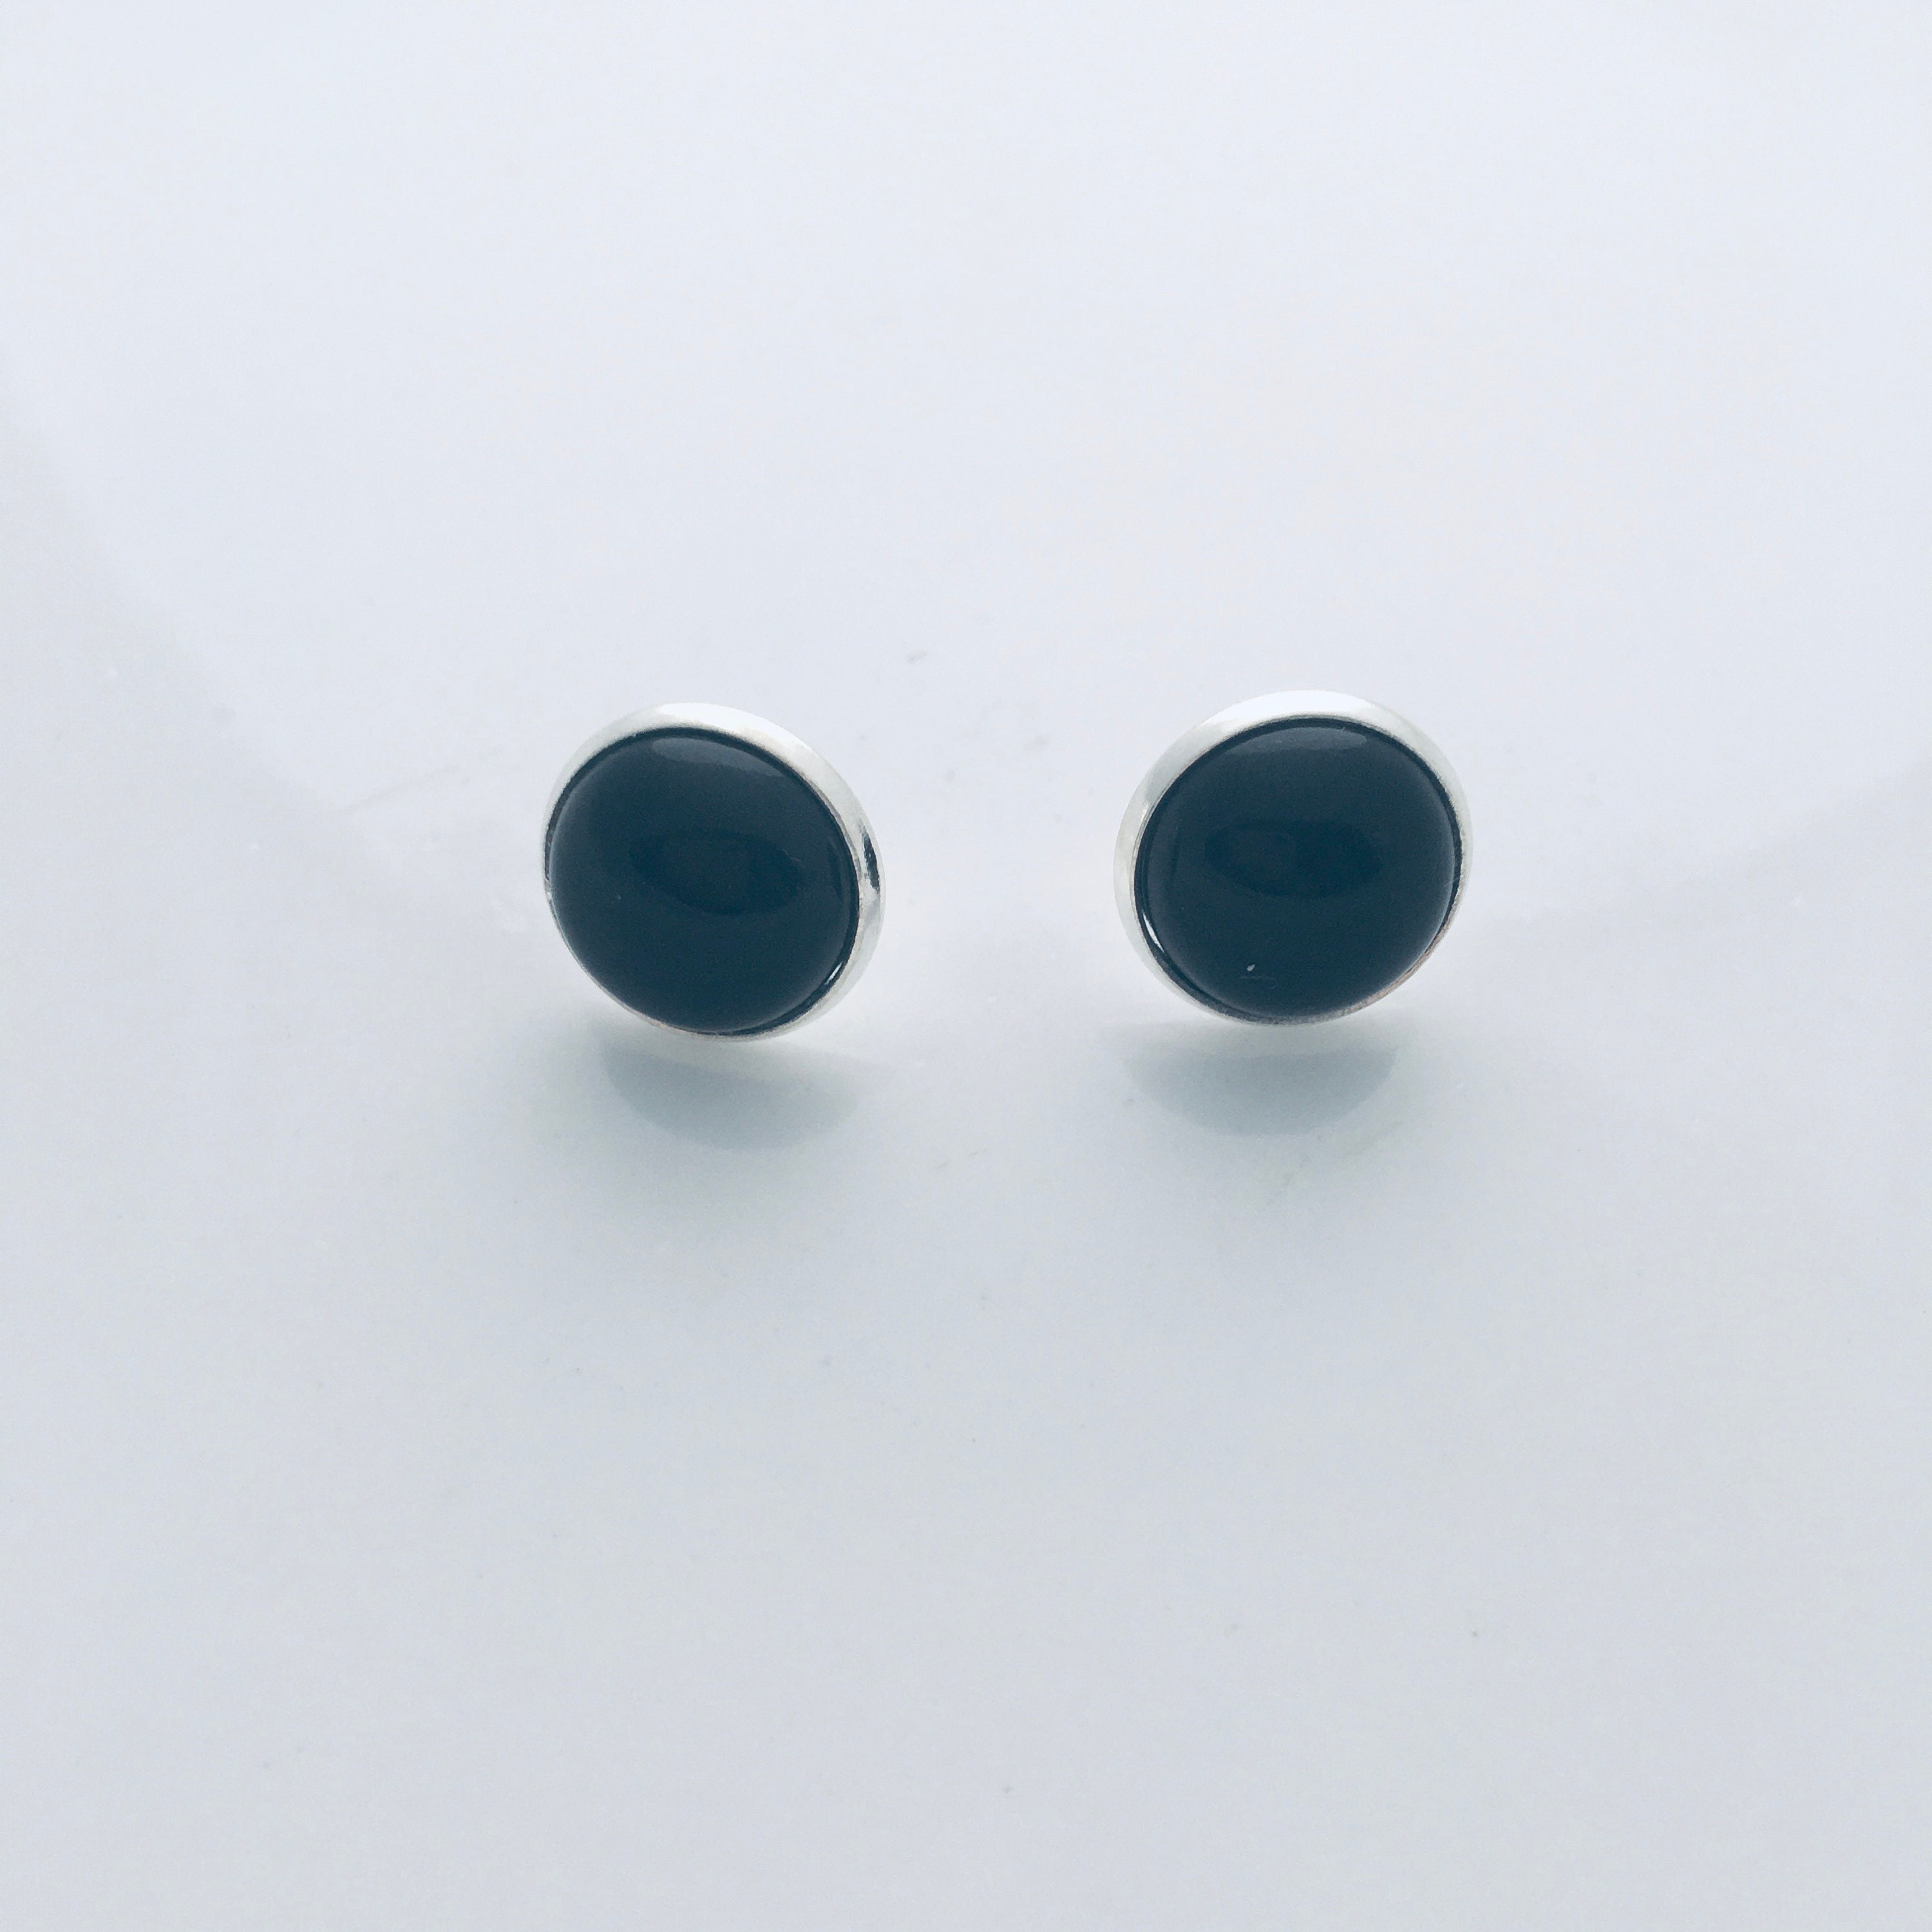 Black agate dangle earrings black stud earrings for friend | Etsy